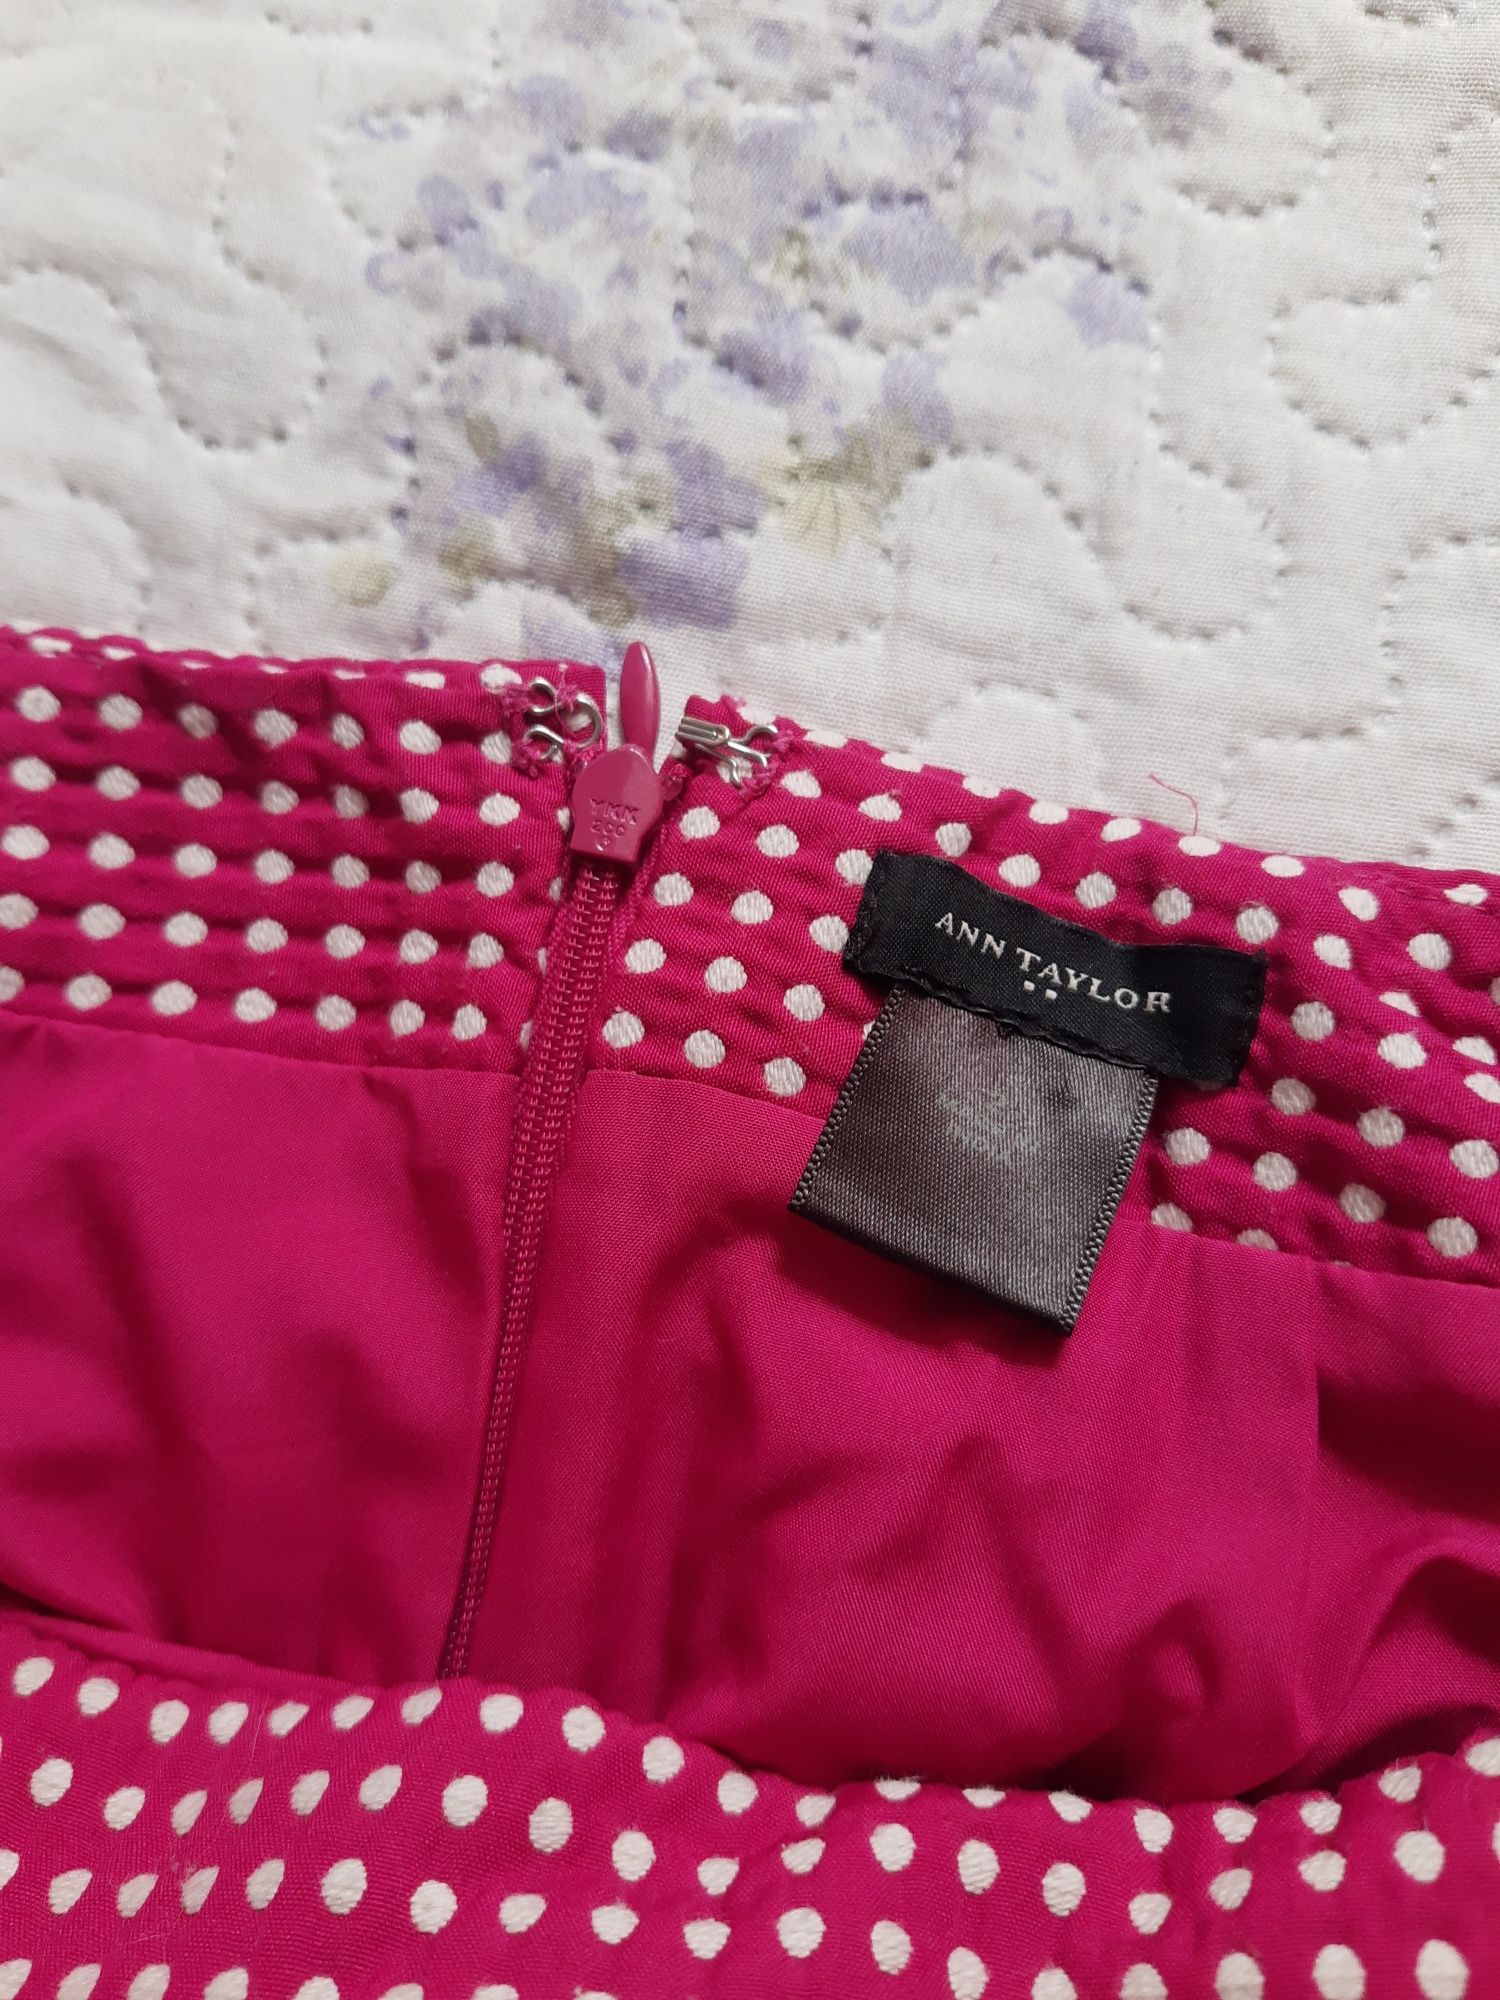 Różowa spódnica ołówkowa, dopasowana, w kropeczki, Ann Taylor, rozmiar